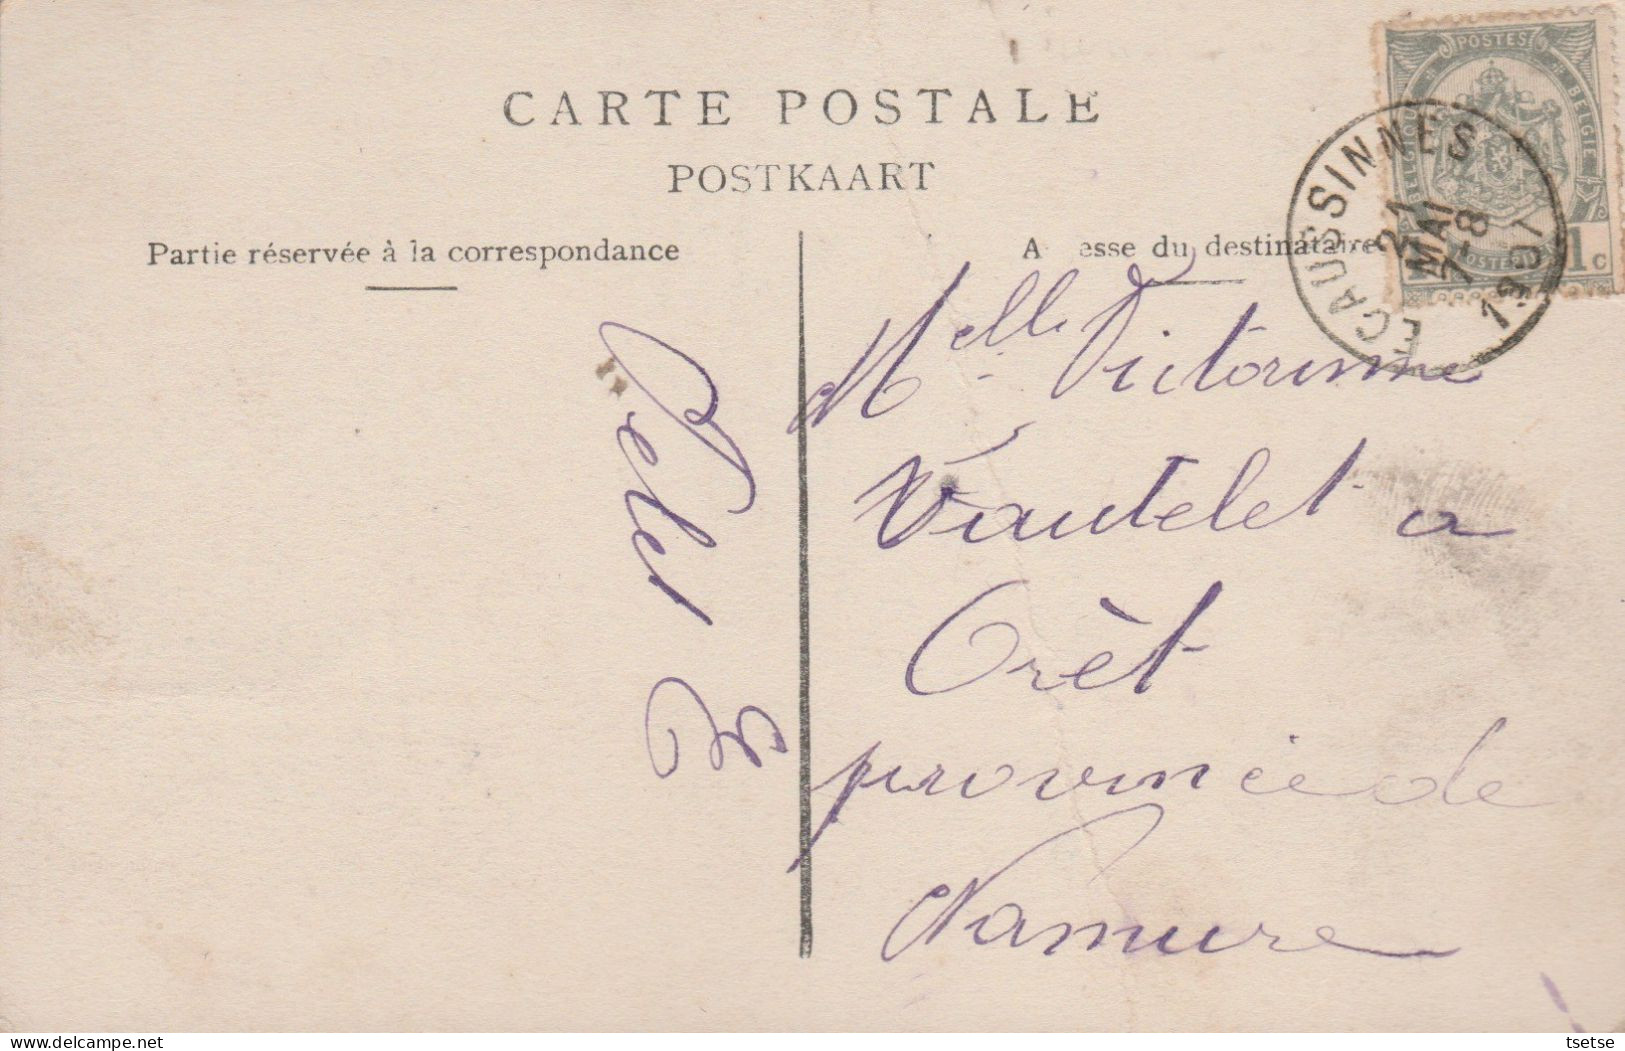 Ecaussinnes - Le Château De La Follie -1907 ( Voir Verso ) - Ecaussinnes